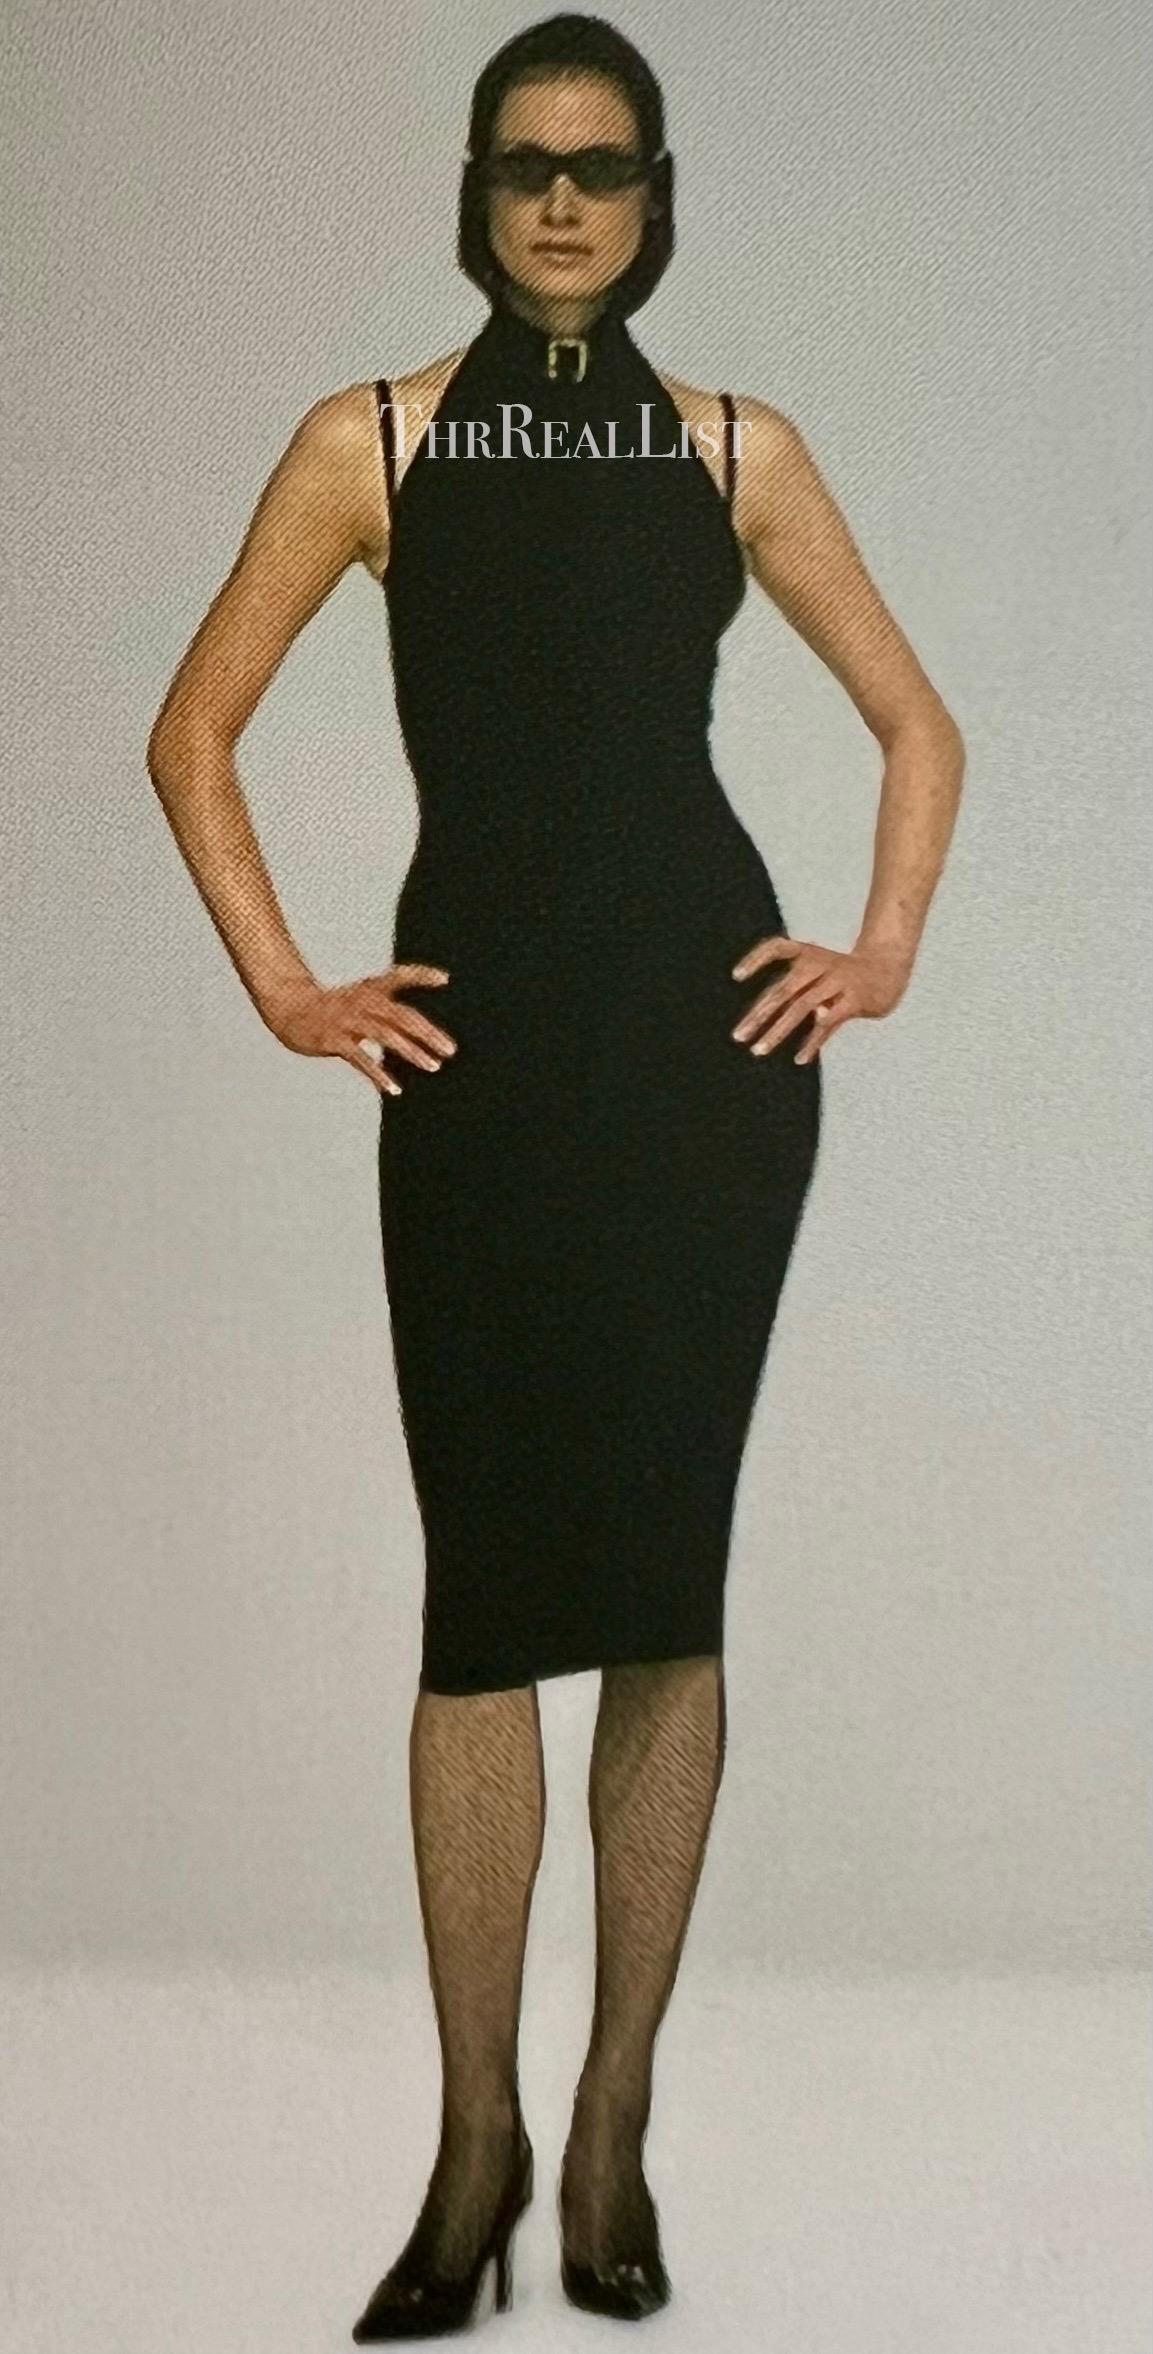 Ce modèle présente un top à capuche noir sans manches Dolce & Gabbana. Une version de ce modèle de la collection automne/hiver 2001 a été présentée sur le podium de la saison sous le nom de look 49. Ce fabuleux haut de forme est rehaussé d'une